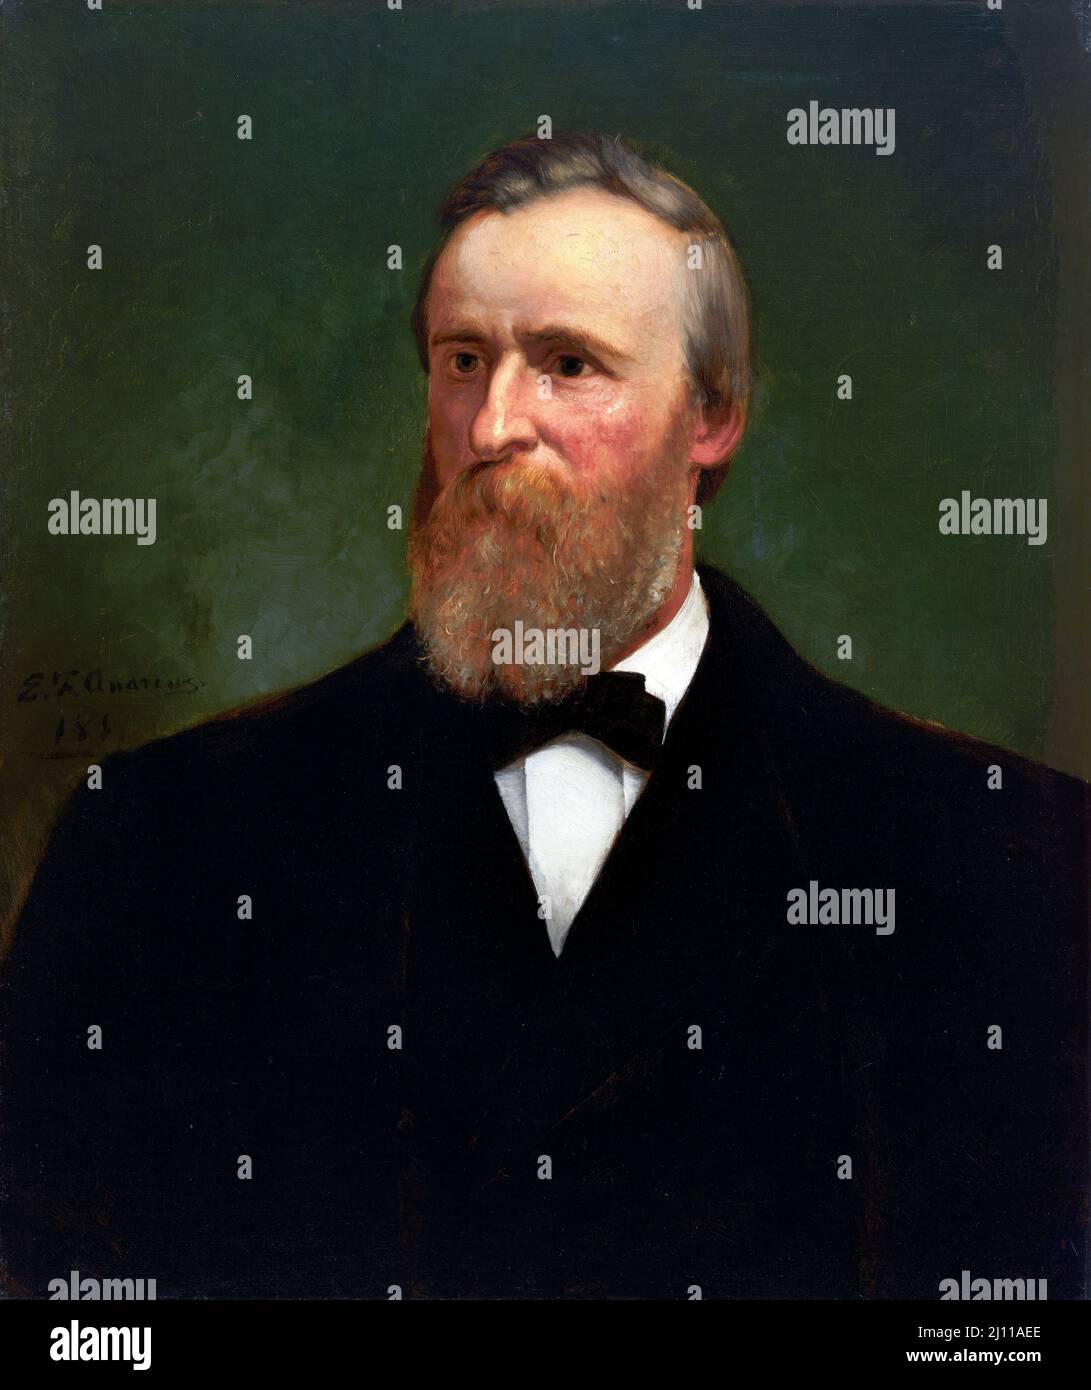 Rutherford B Hayes. Portrait du président américain de 19th, Rutherford B Hayes (1822-1893) par Eliphalet Frazer Andrews, huile sur toile, 1881 Banque D'Images